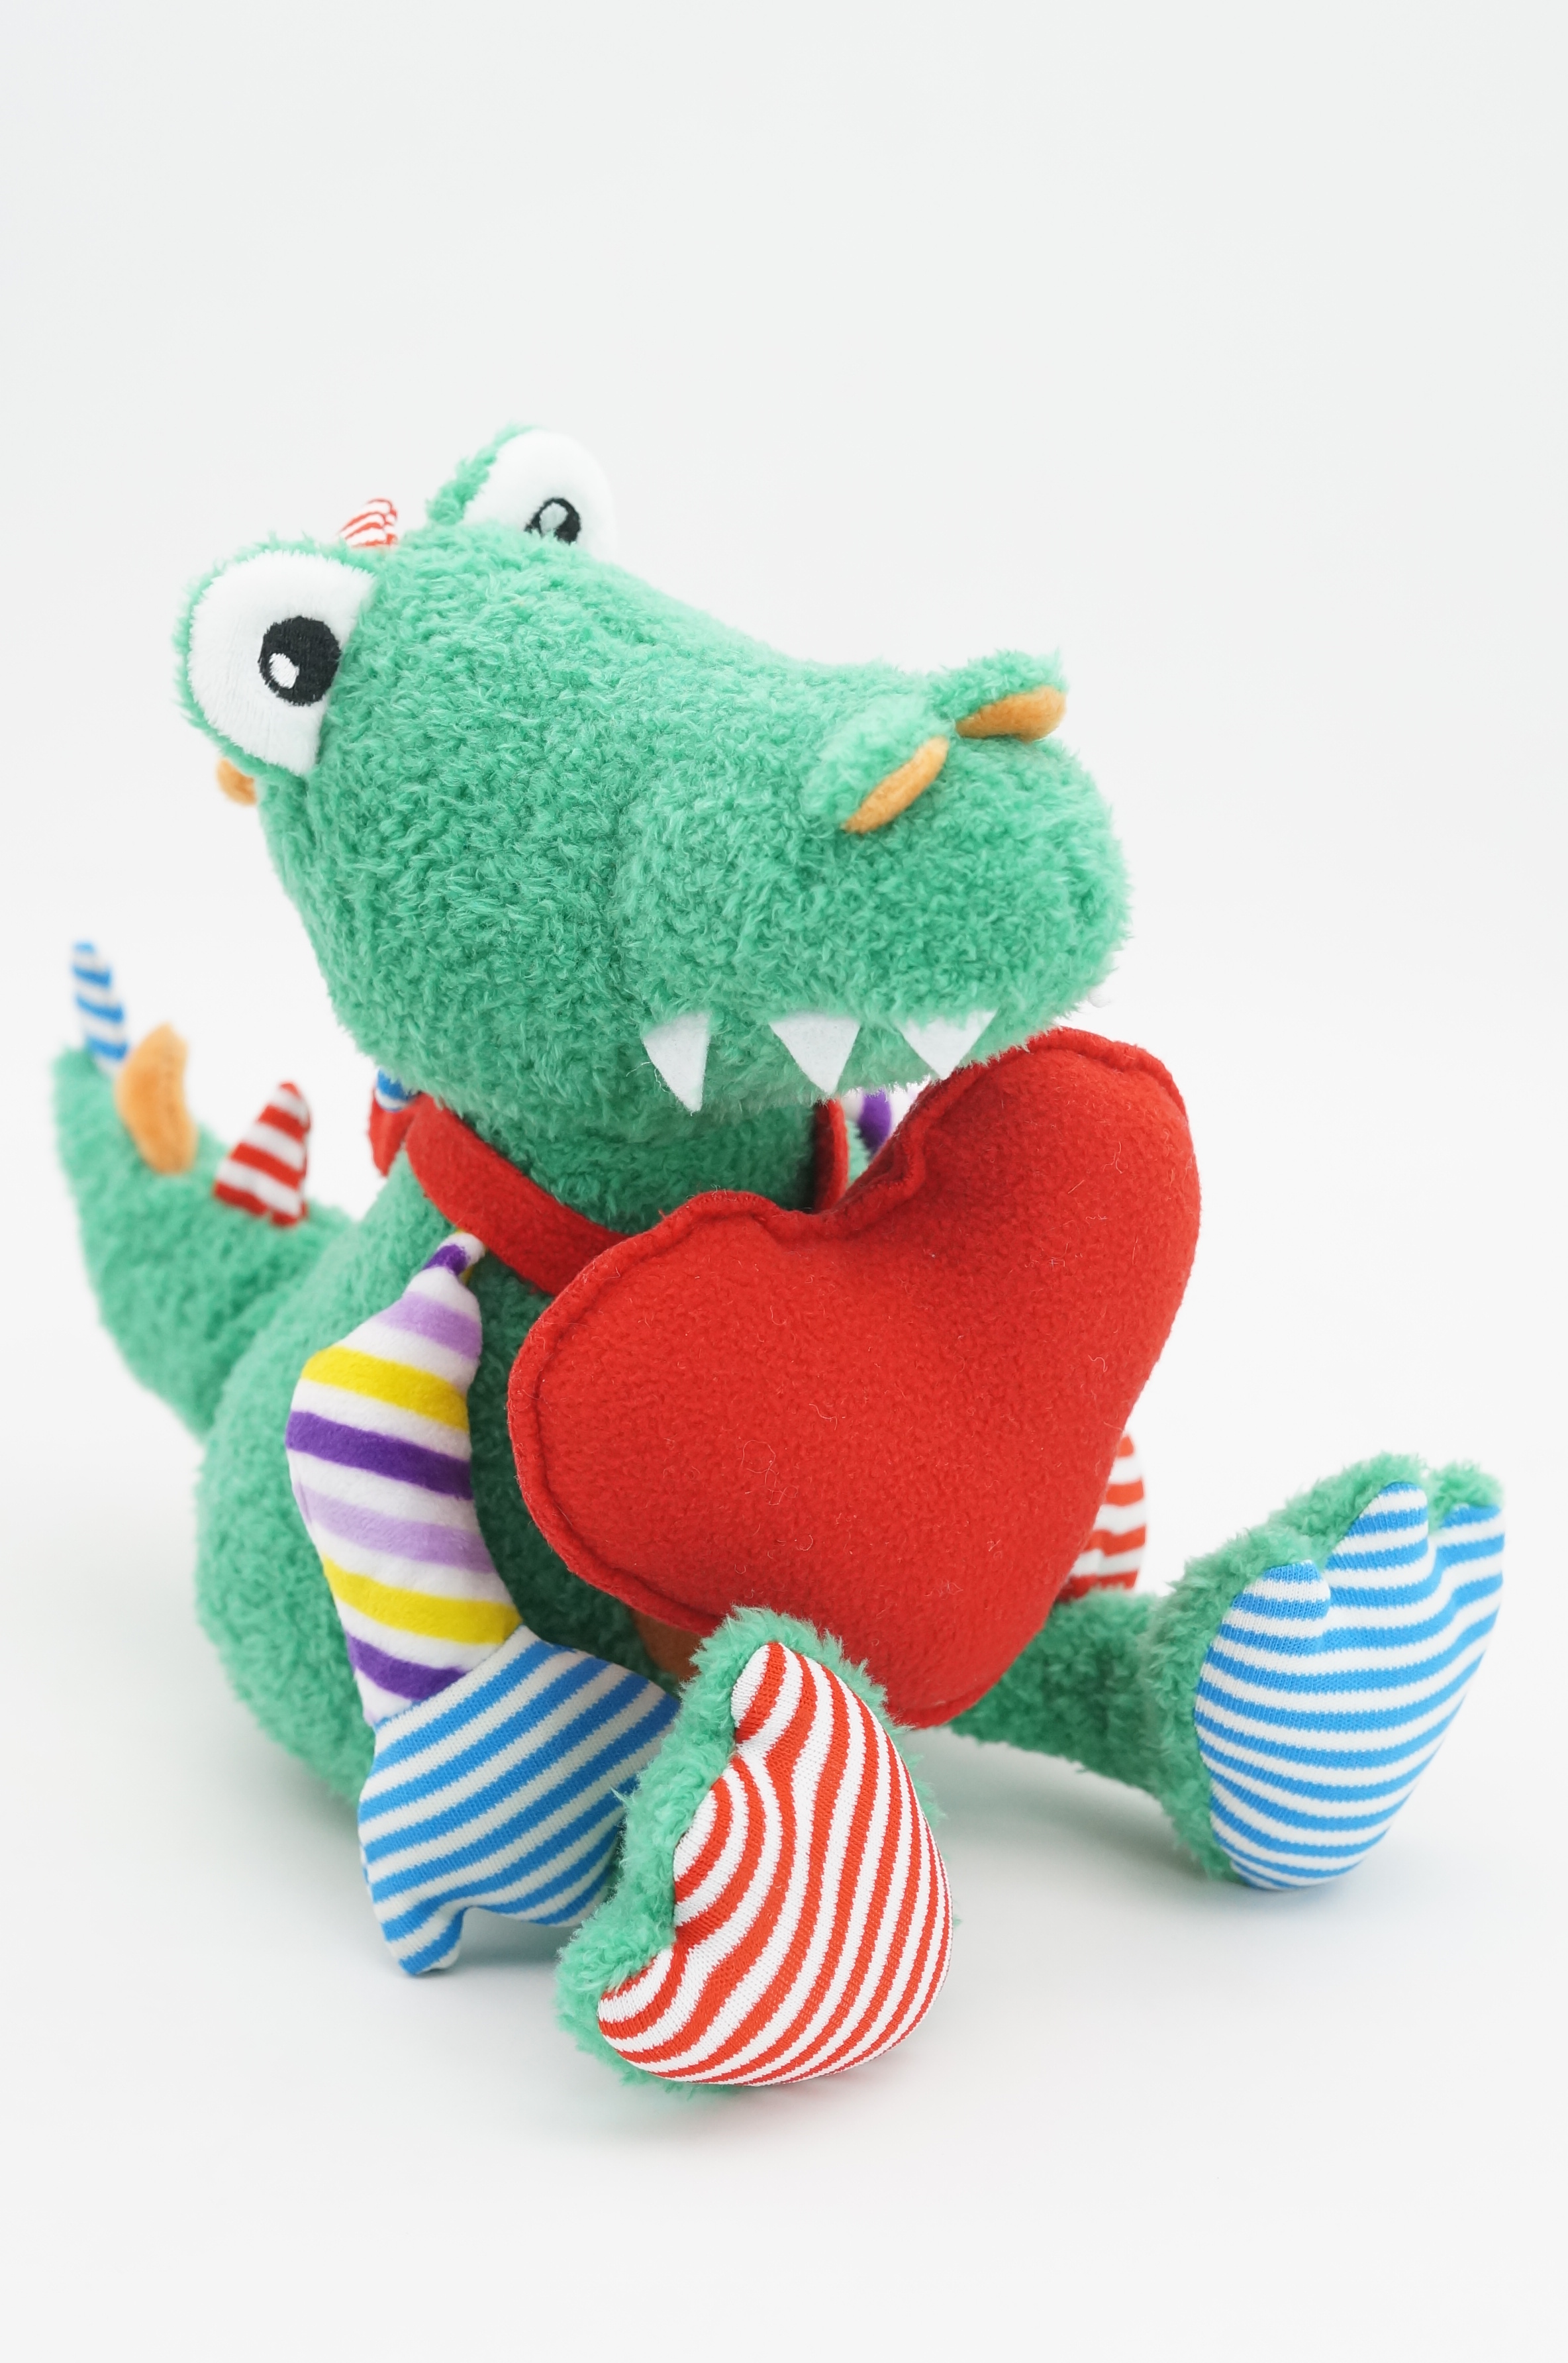 Мягкая игрушка Unaky Soft Toy Крокодил Роб 20 см зеленый; бежевый; красный мягкая игрушка unaky soft toy крокодил роб 0888320m зеленый белый красный